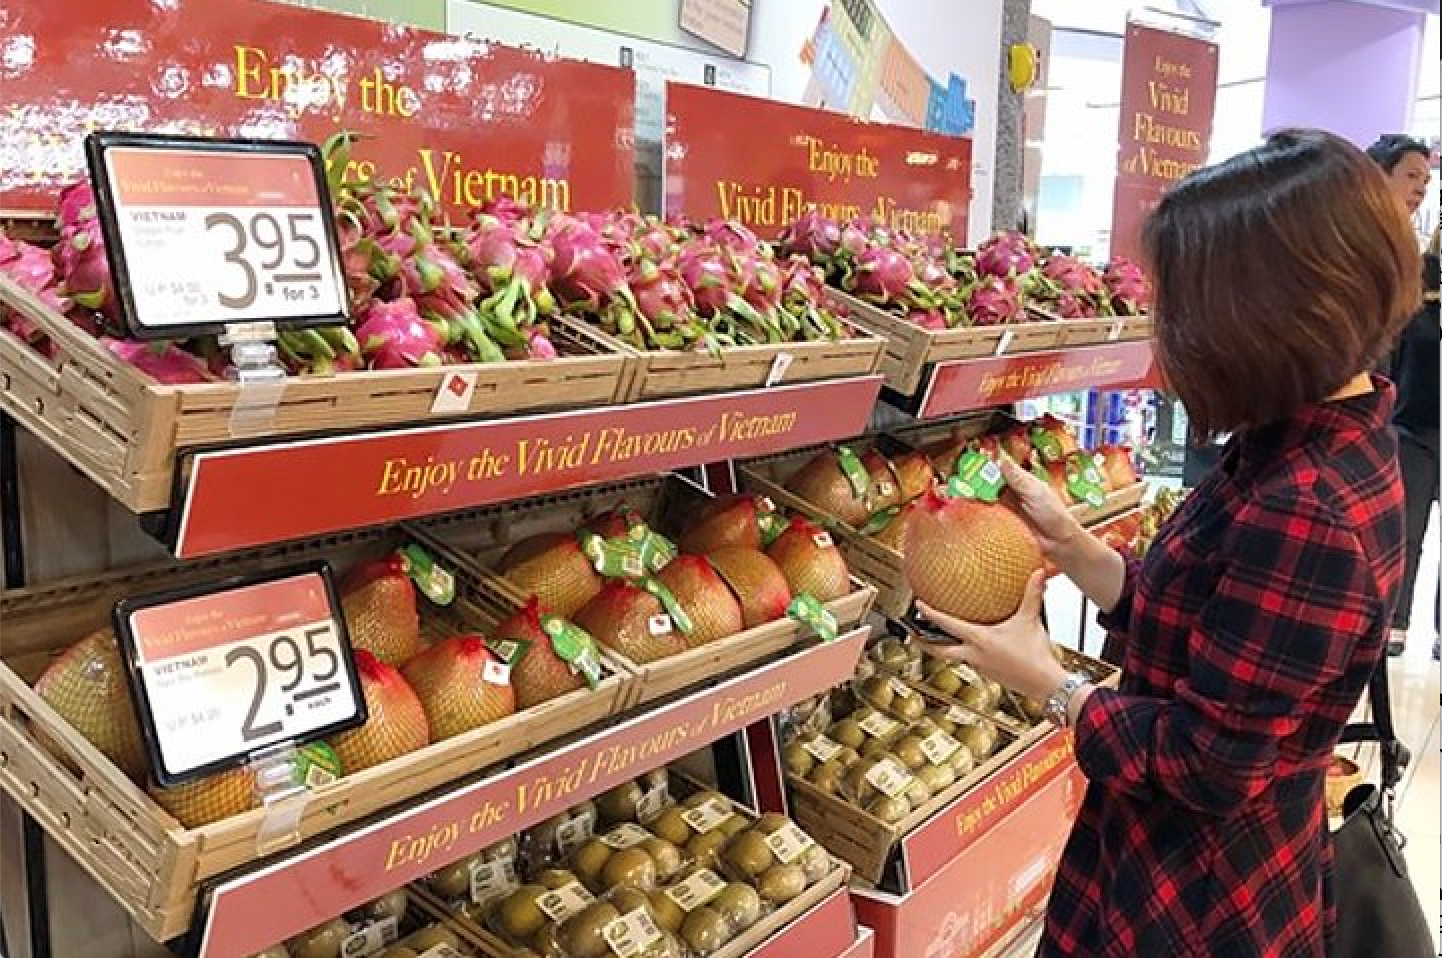 Chi phí sinh hoạt tại Việt Nam: Hình ảnh mua sắm hoa quả trong siêu thị ở Việt Nam.